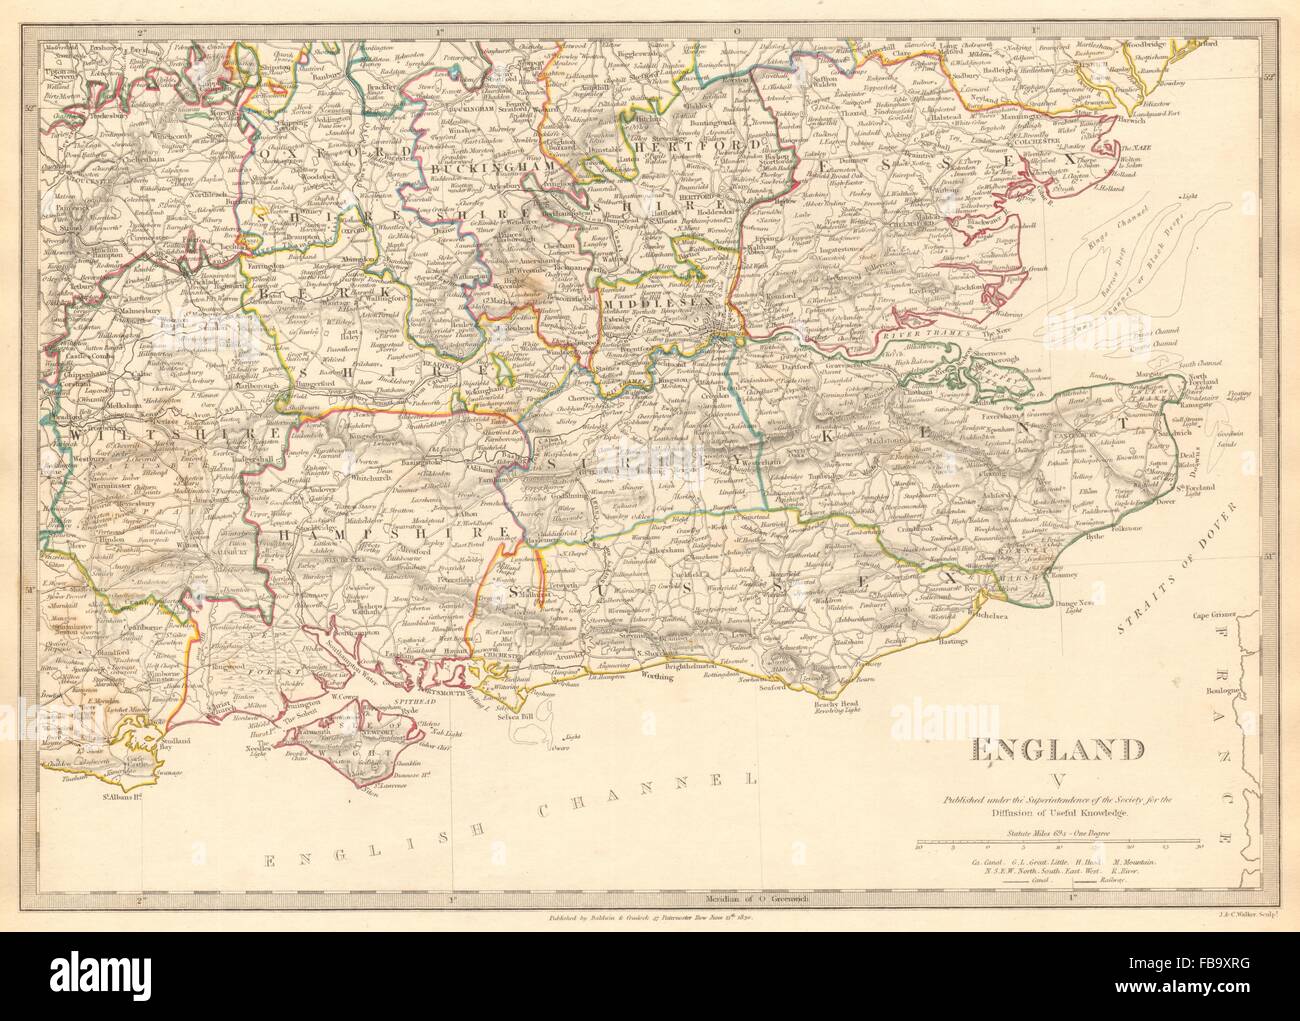 Inglaterra se. Middx Kent, Sussex, Surrey Hants Berks Essex Herts. SDUK, 1844 mapa Foto de stock